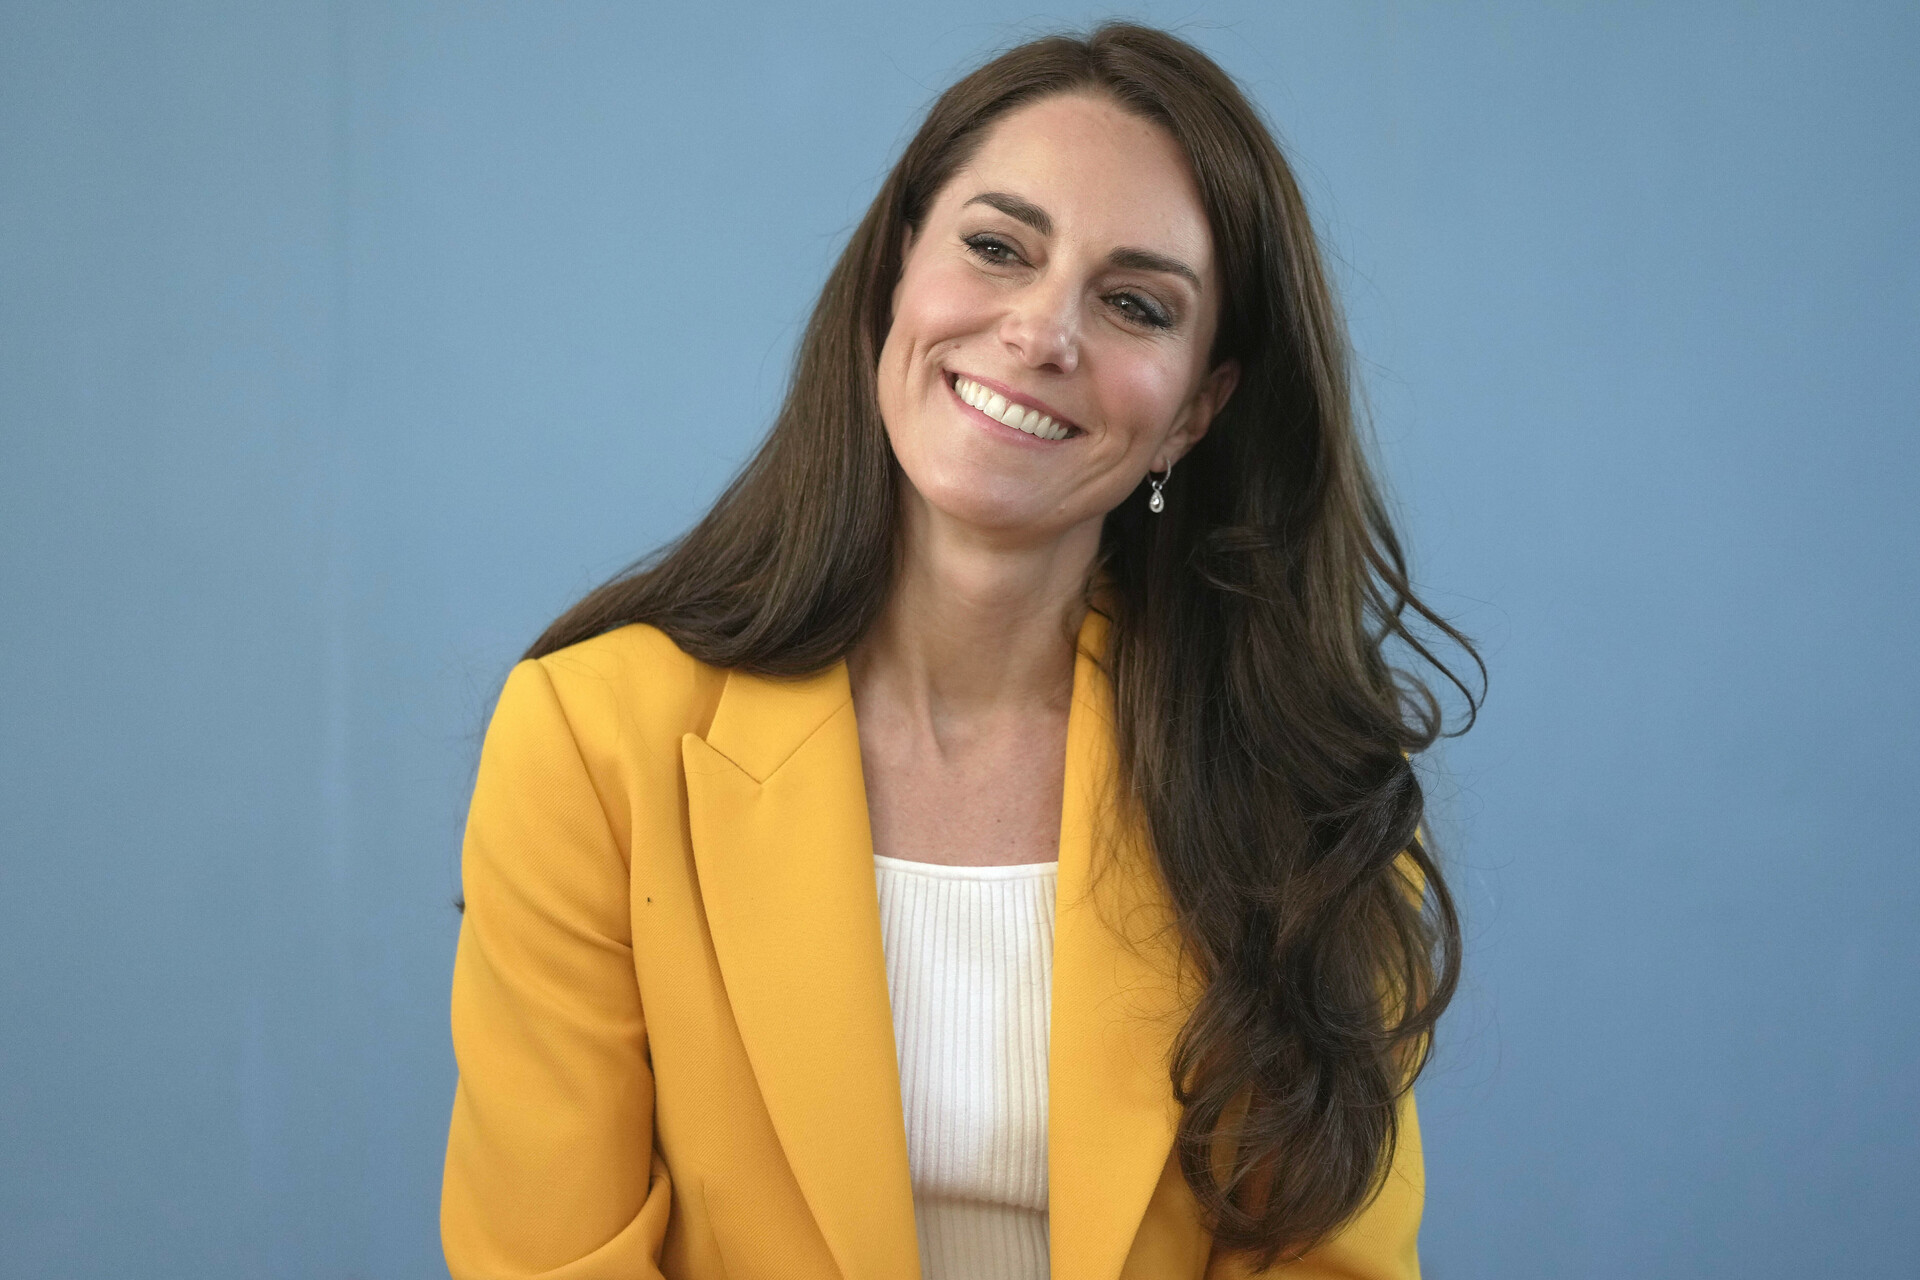 Desde que en enero se anunció que Kate Middleton, princesa de Gales, fue sometida a una cirugía abdominal, la atención se ha centrado en ella. Su desaparición de la escena pública ha abonado a una serie de teorías. Pero ahora, de acuerdo con un medio británico, la esposa del príncipe Guillermo se ha dejado ver en su compañía.